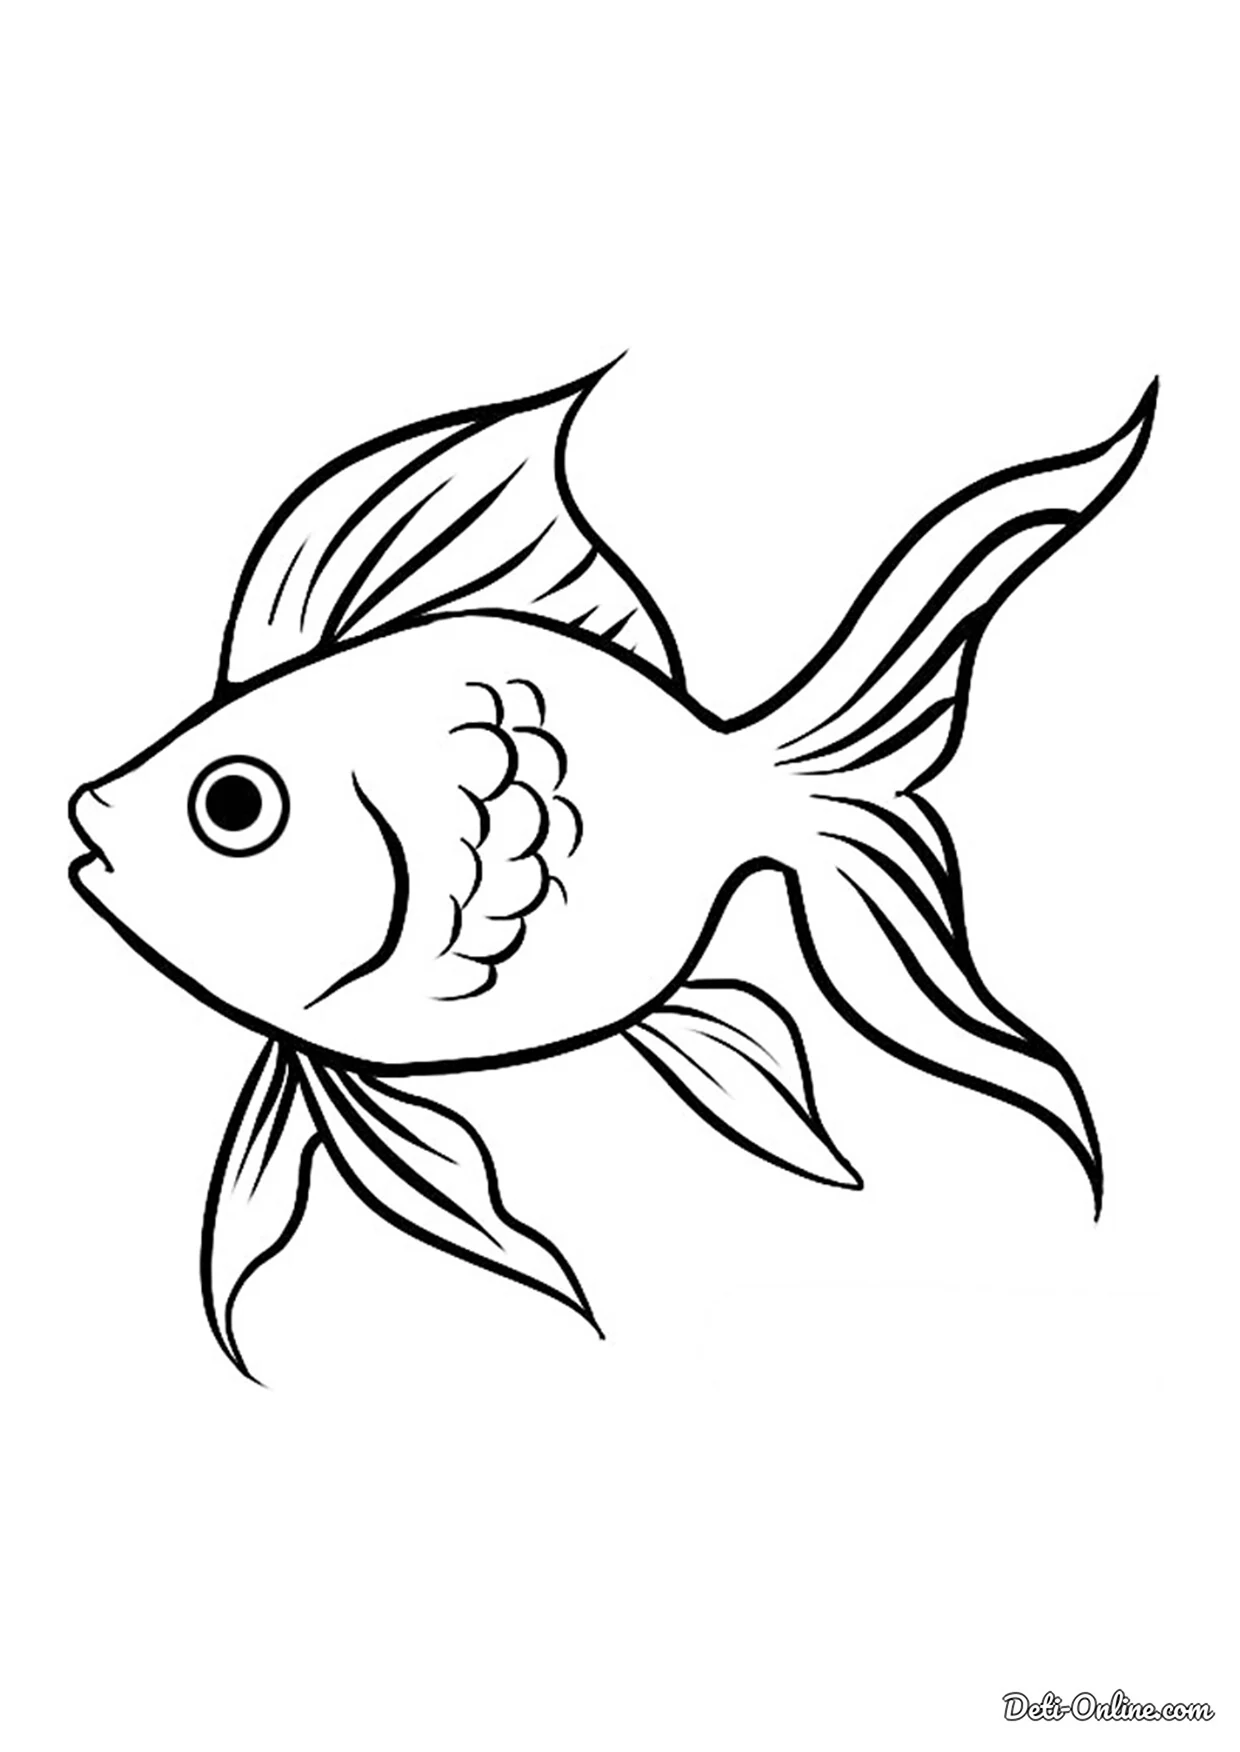 Золотая рыбка раскраска. Для срисовки